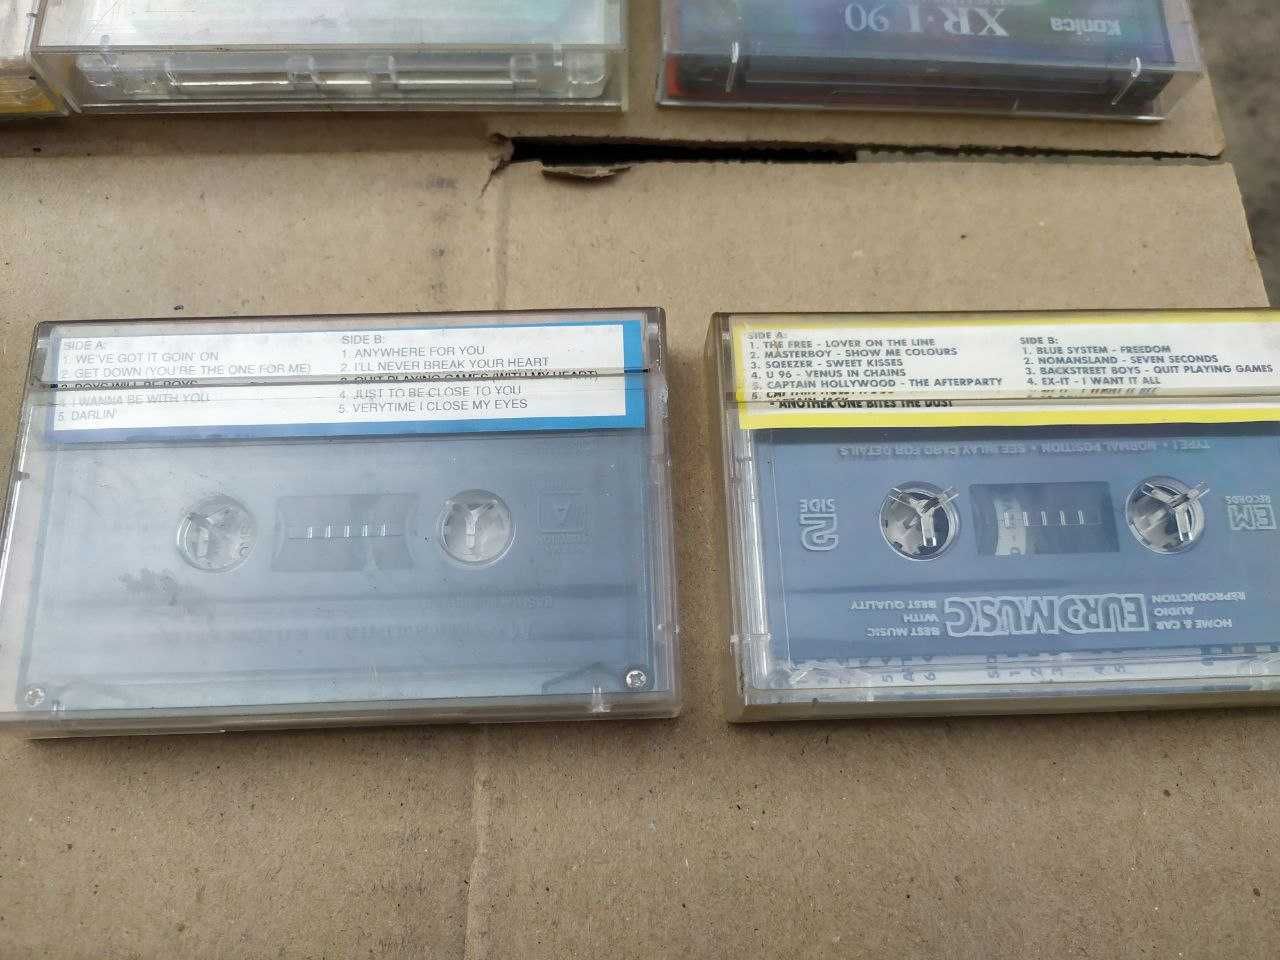 Комплект из 8 кассет (Queen, AC DC, Eminem, Ария, Авраам Руссо и тд)